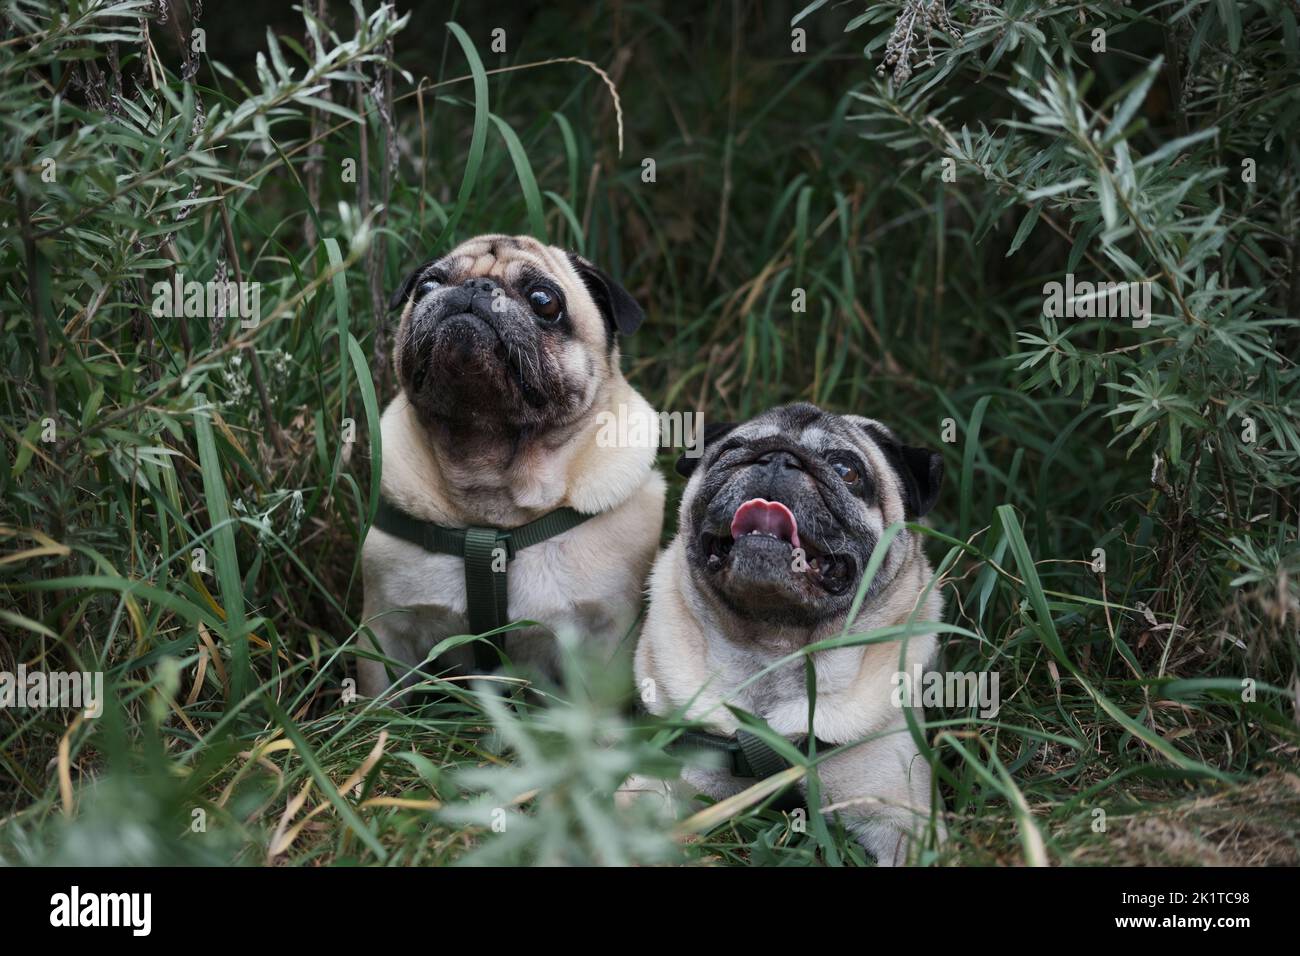 Porträt von zwei Mops in grün natürlichen Hintergrund. Zwei niedliche Hunde posieren im grünen Gras und Busch im Freien Stockfoto